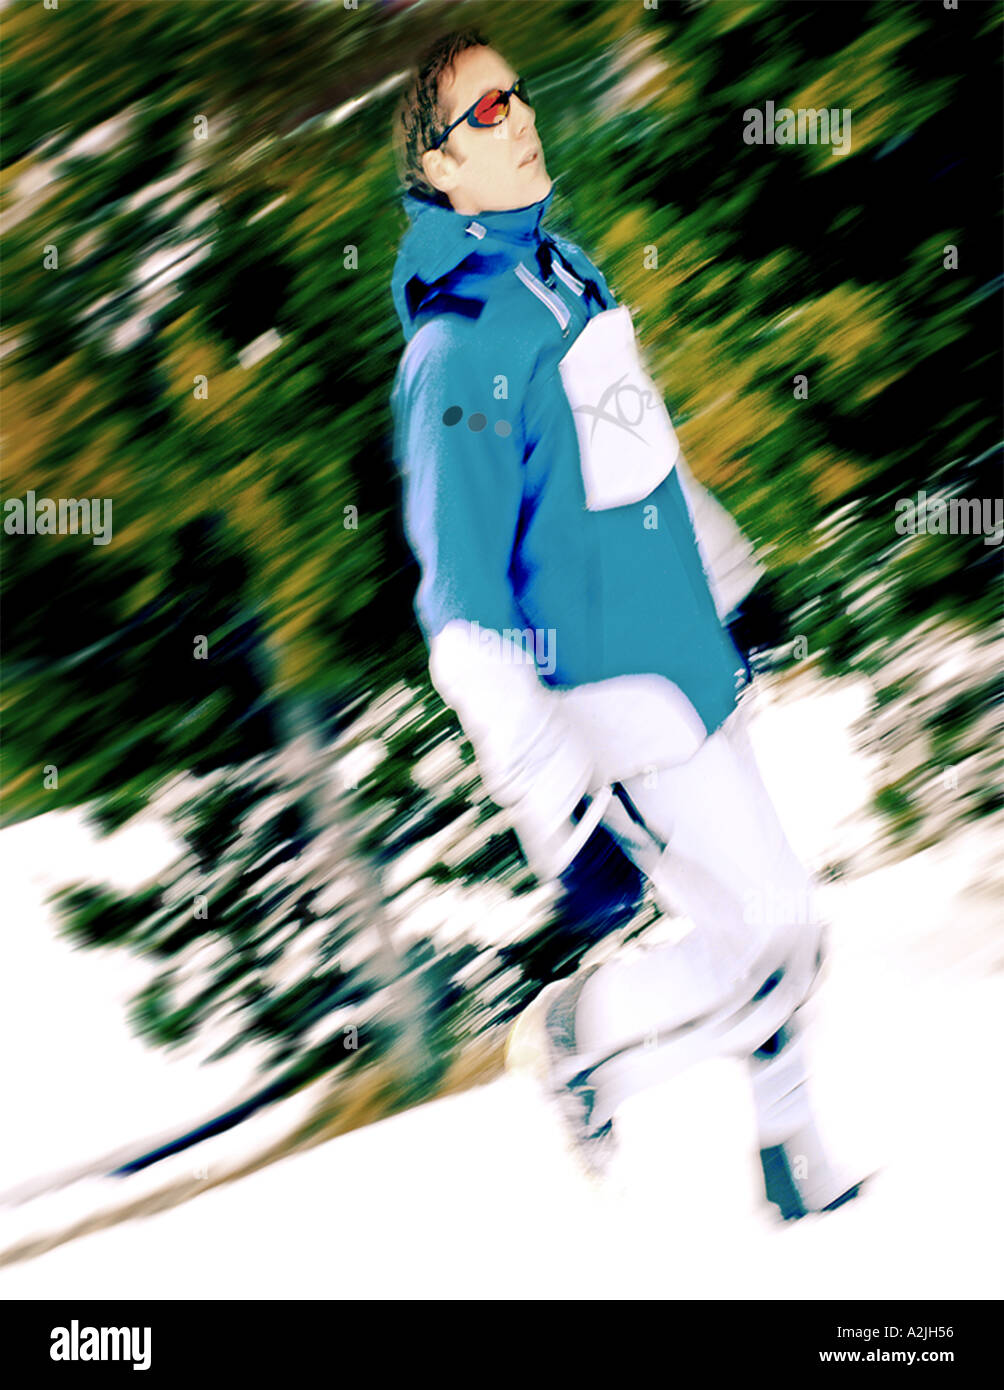 La photographie éditoriale d'un homme/femme de 25 ans portant des vêtements de ski/snowboard. Banque D'Images